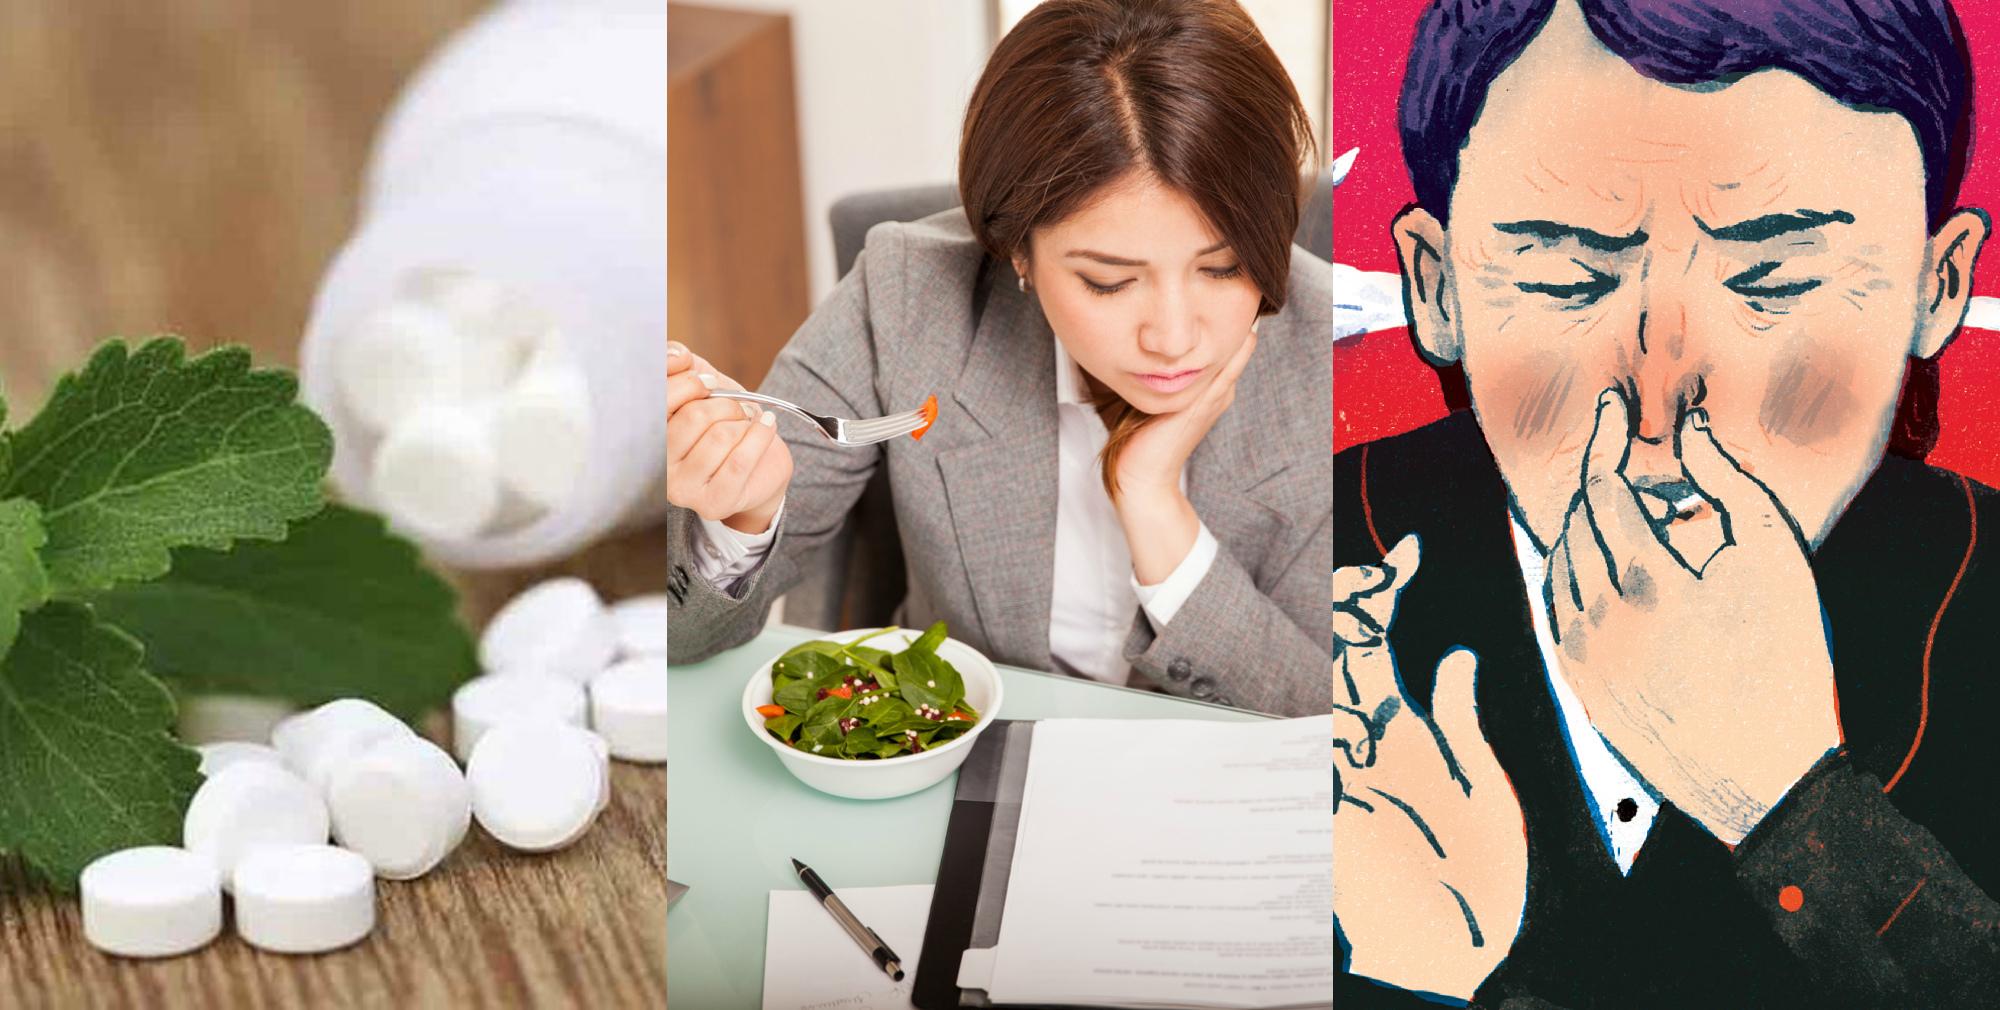 9 вредных привычек, которые вредят вашему желудку: новости, здоровье, вредные привычки, привычки, желудок